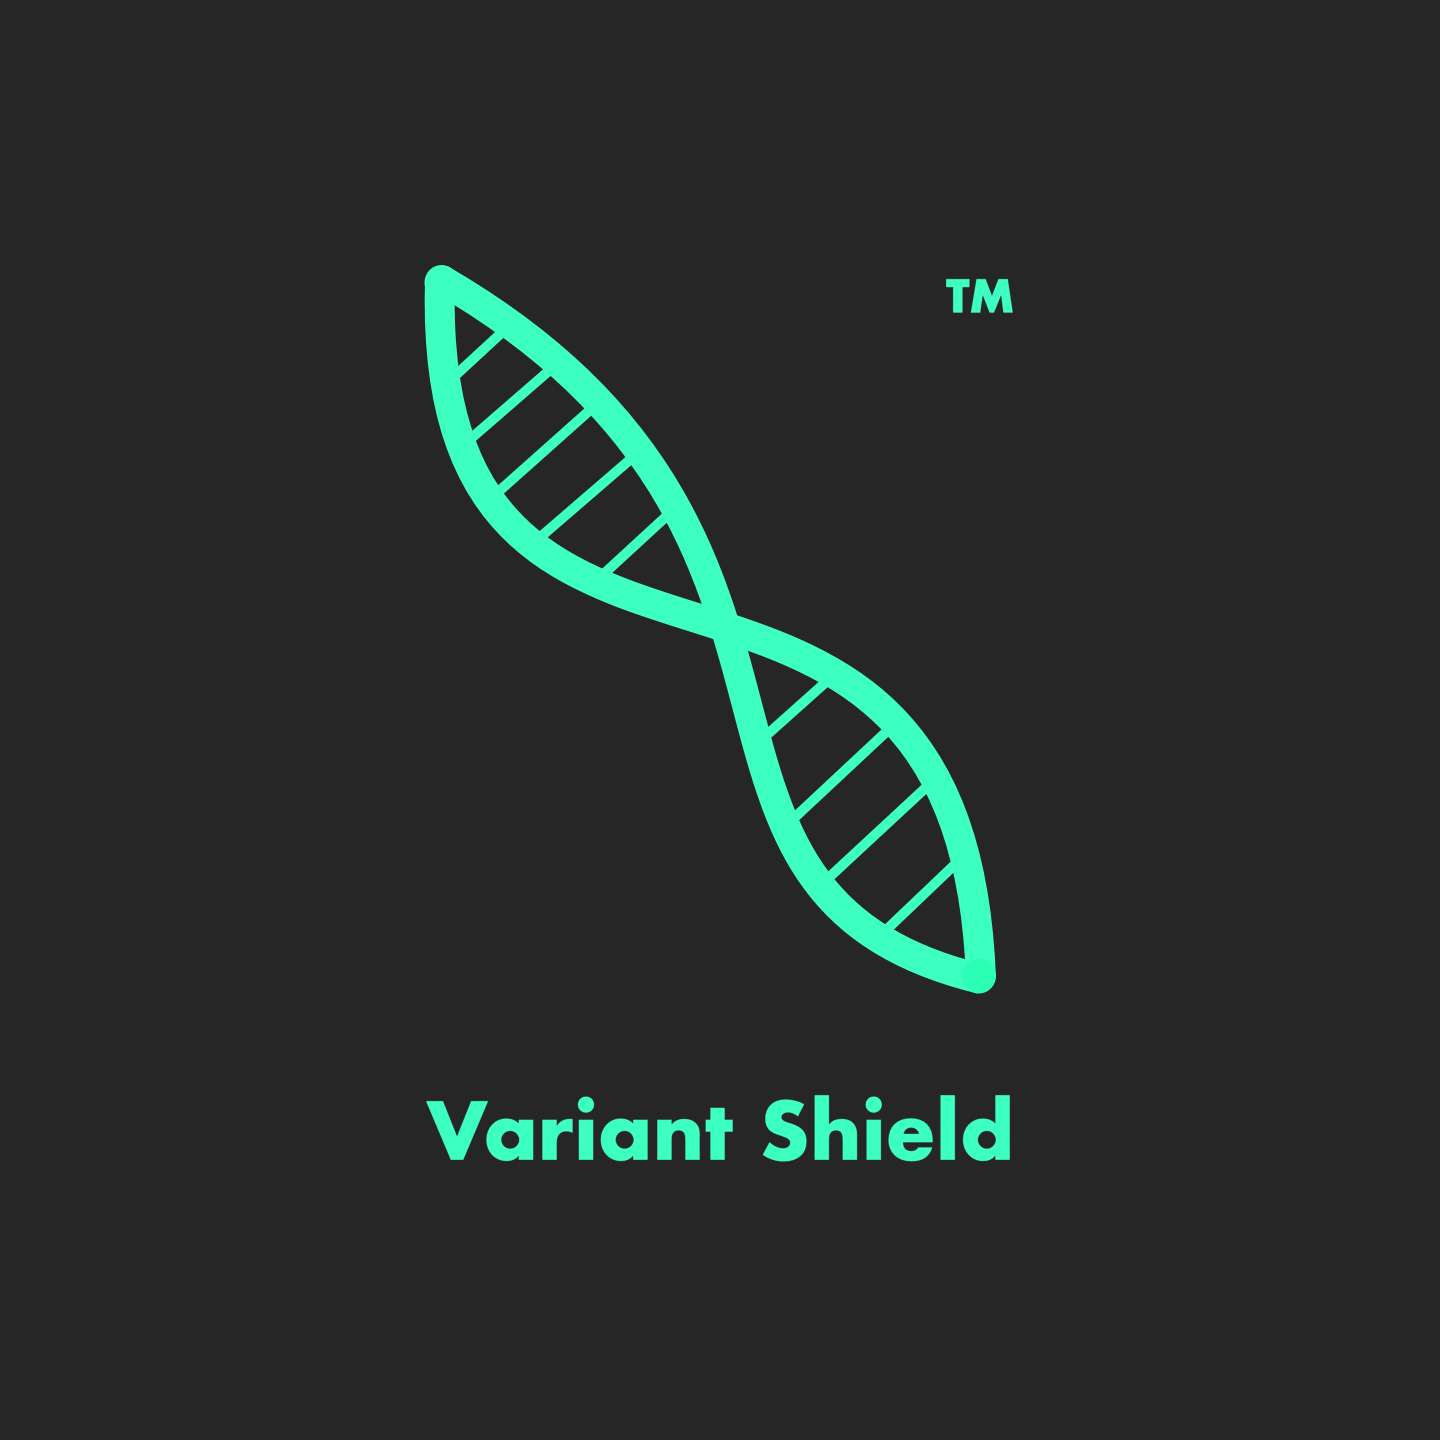 variant_shield_dark copy.jpg